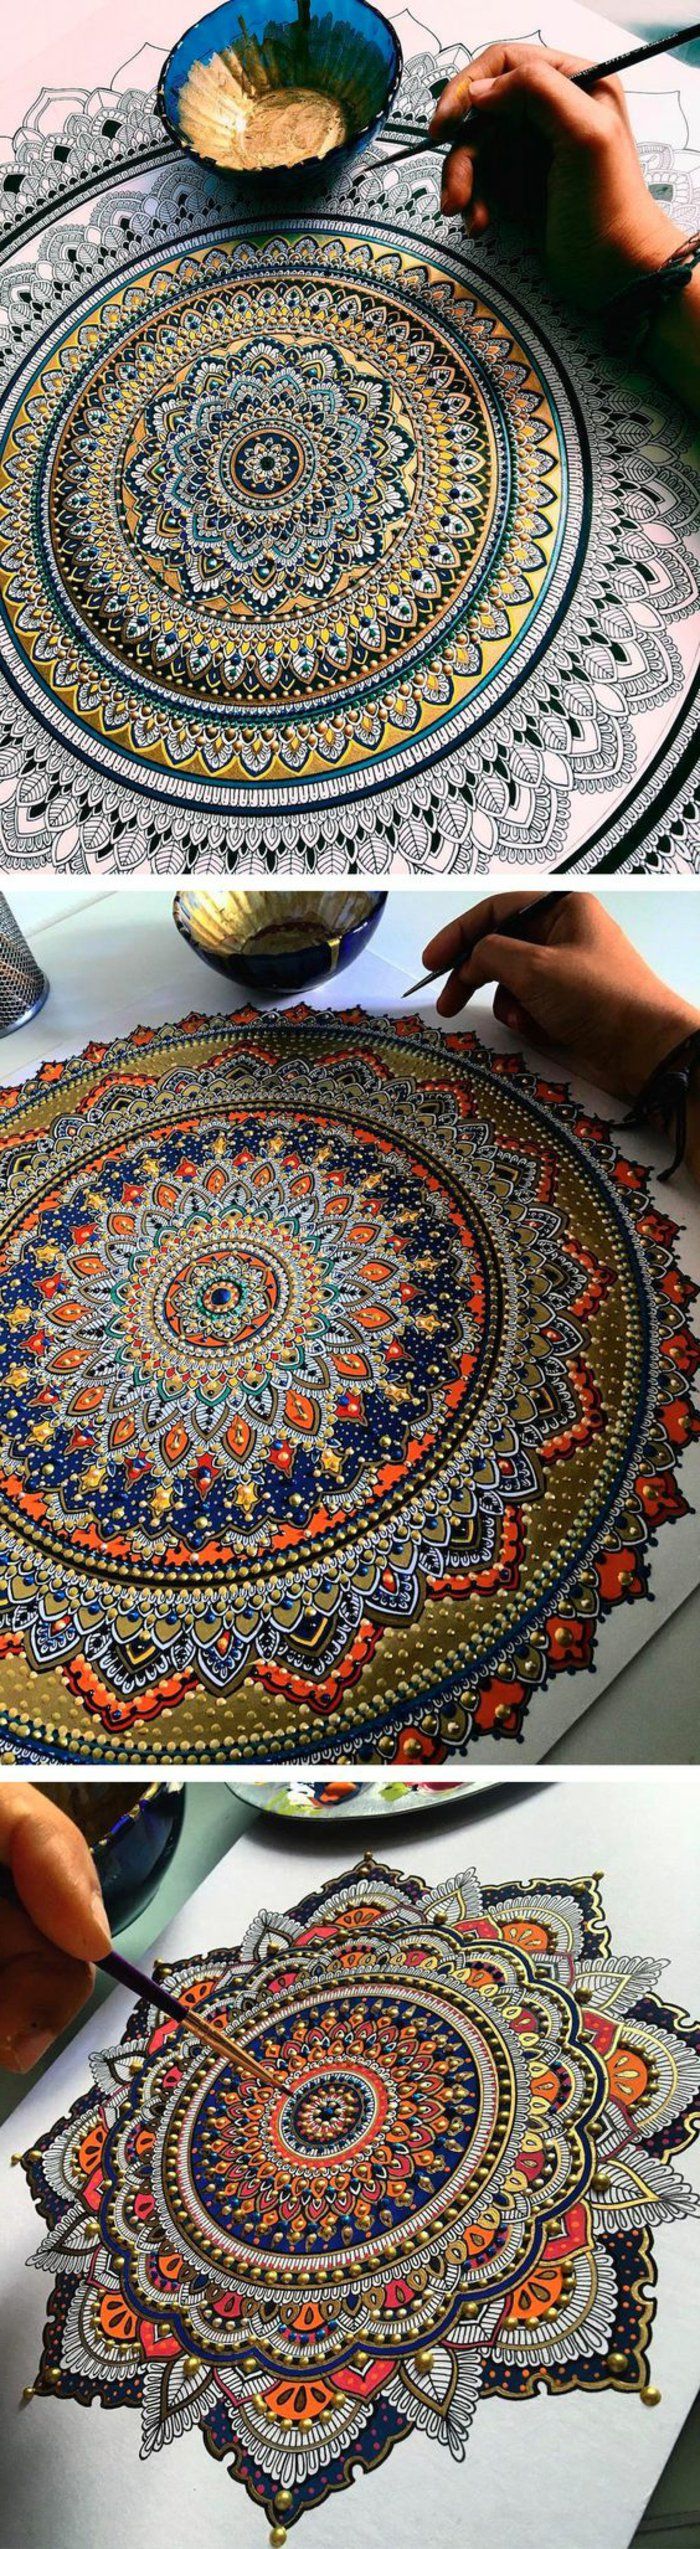 malować ogromne mandale z akwarelami, różne mandale w różnych kolorach